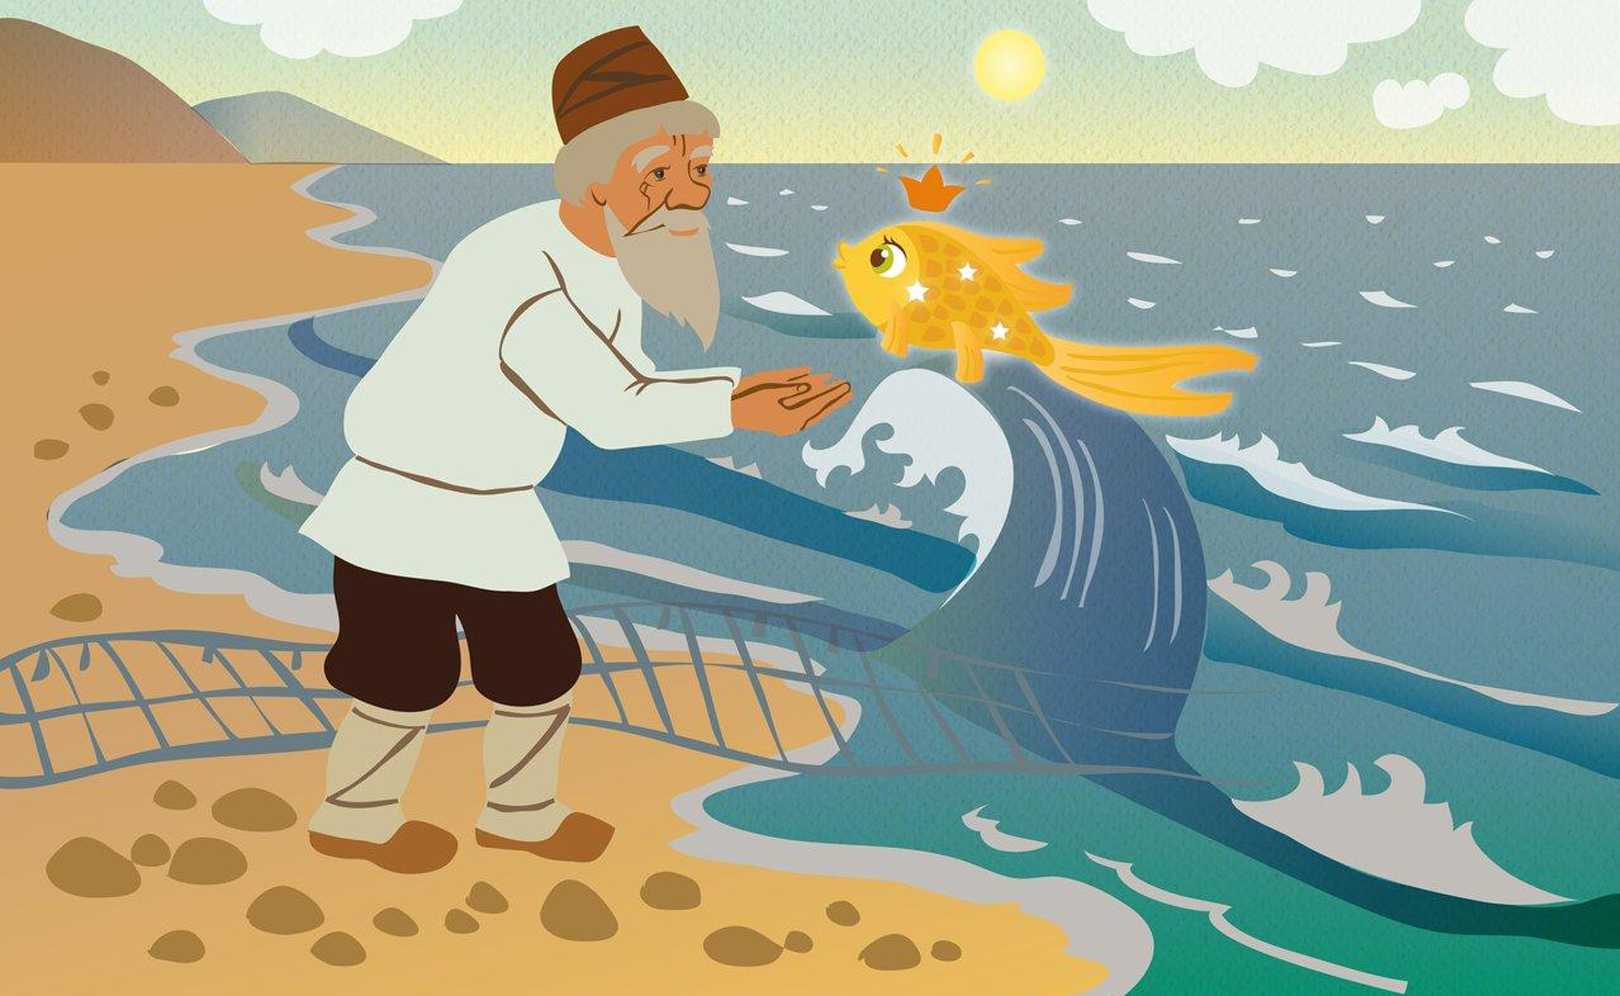 Сказка о рыбаке и рыбке Автор - Пушкин АС Сказка о бедном рыбаке, жадной старухе и золотой рыбке  с иллюстрациями БДехтерева